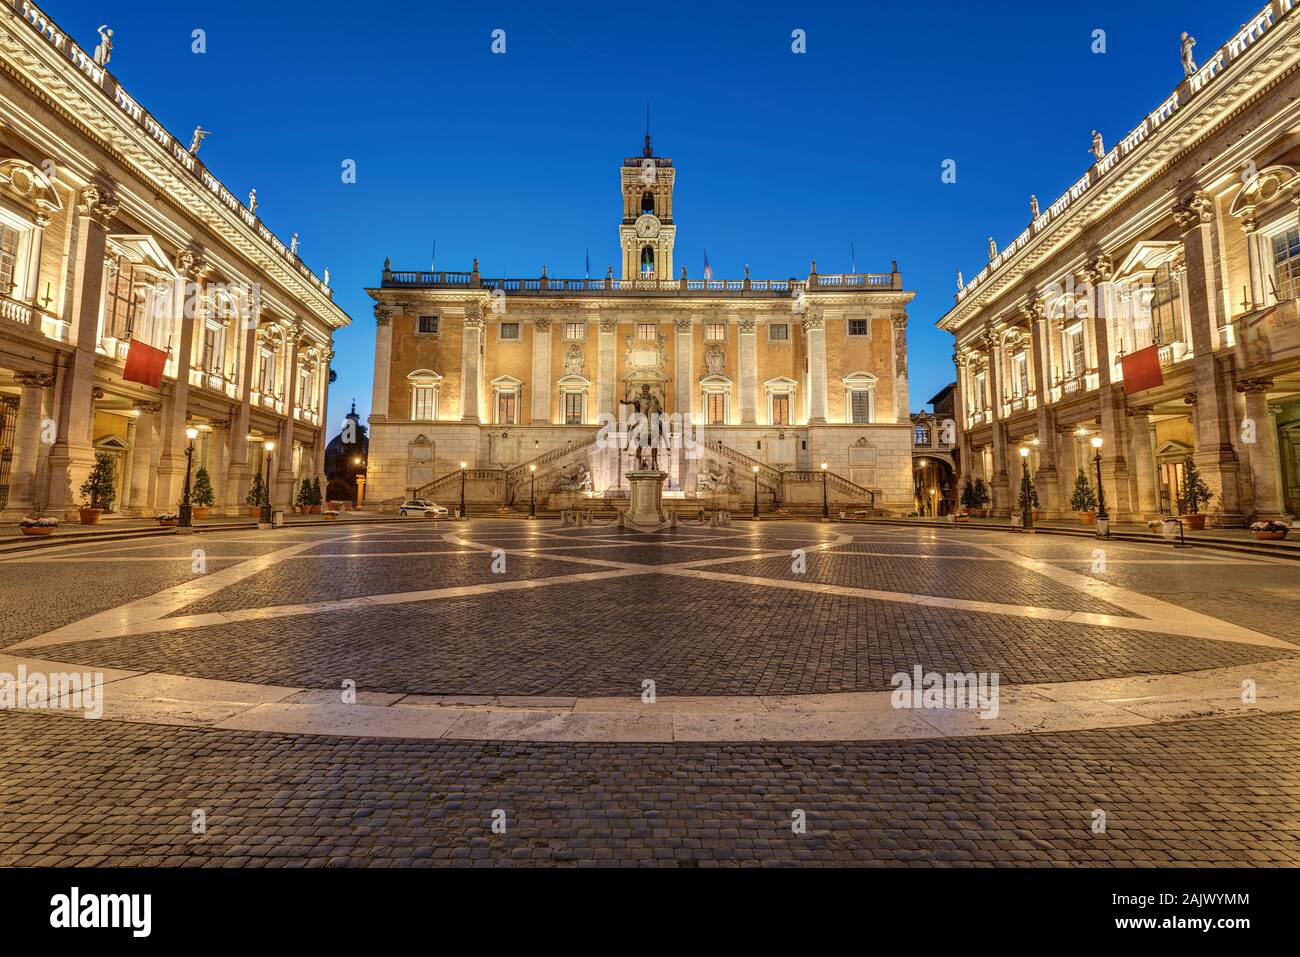 The Piazza del Campidoglio on the Capitoline Hill in Rome at night Stock Photo